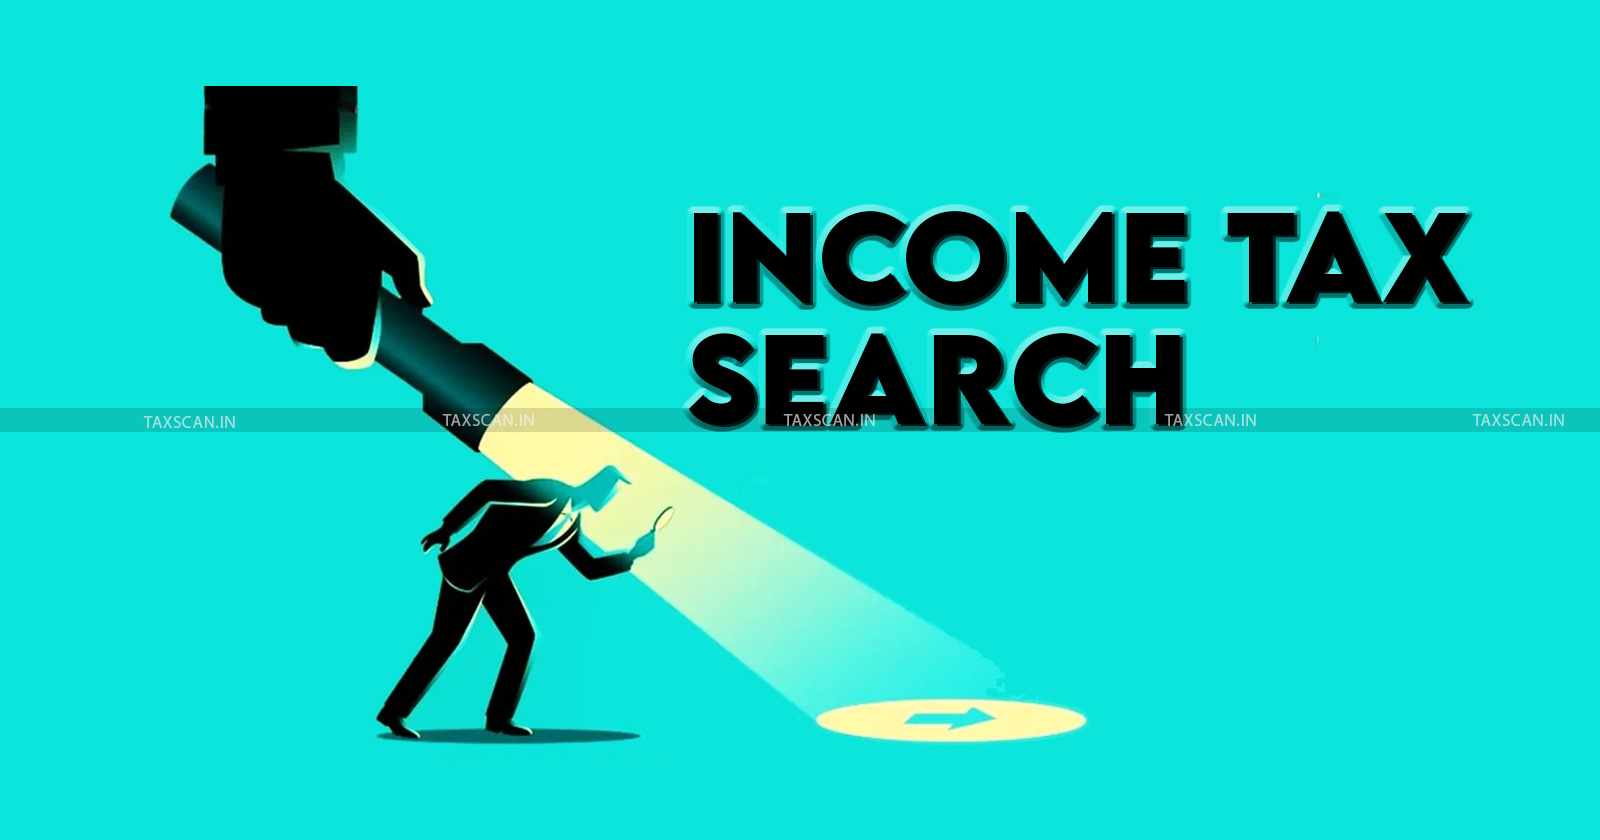 Income tax - Income tax news - Income tax search - Income tax assessment - taxscan